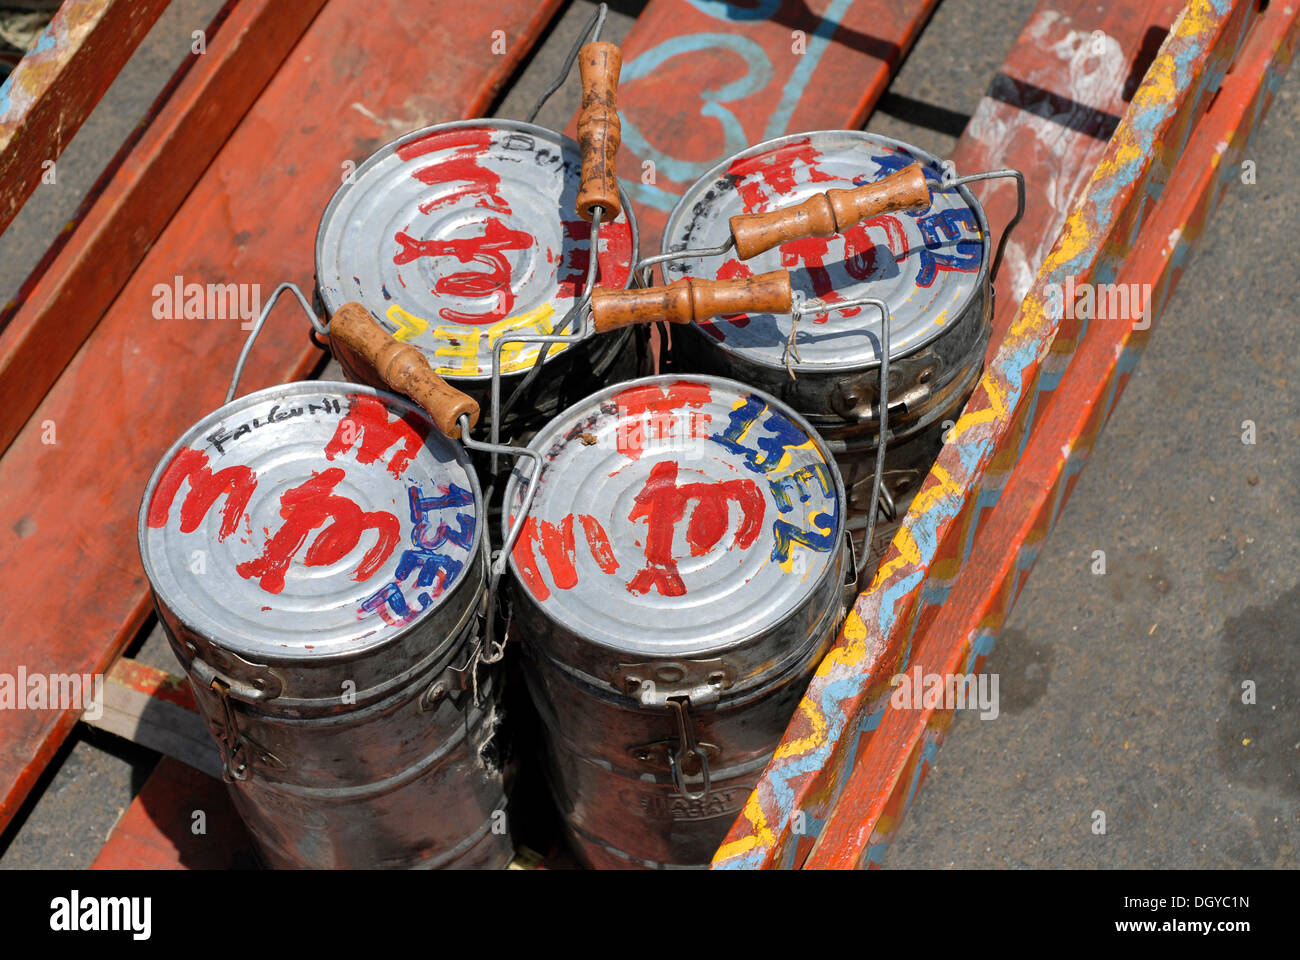 Dabbas ou les contenants d'aliments marqués avec caractères pour permettre une livraison correcte, Mumbai, Inde, Asie Banque D'Images